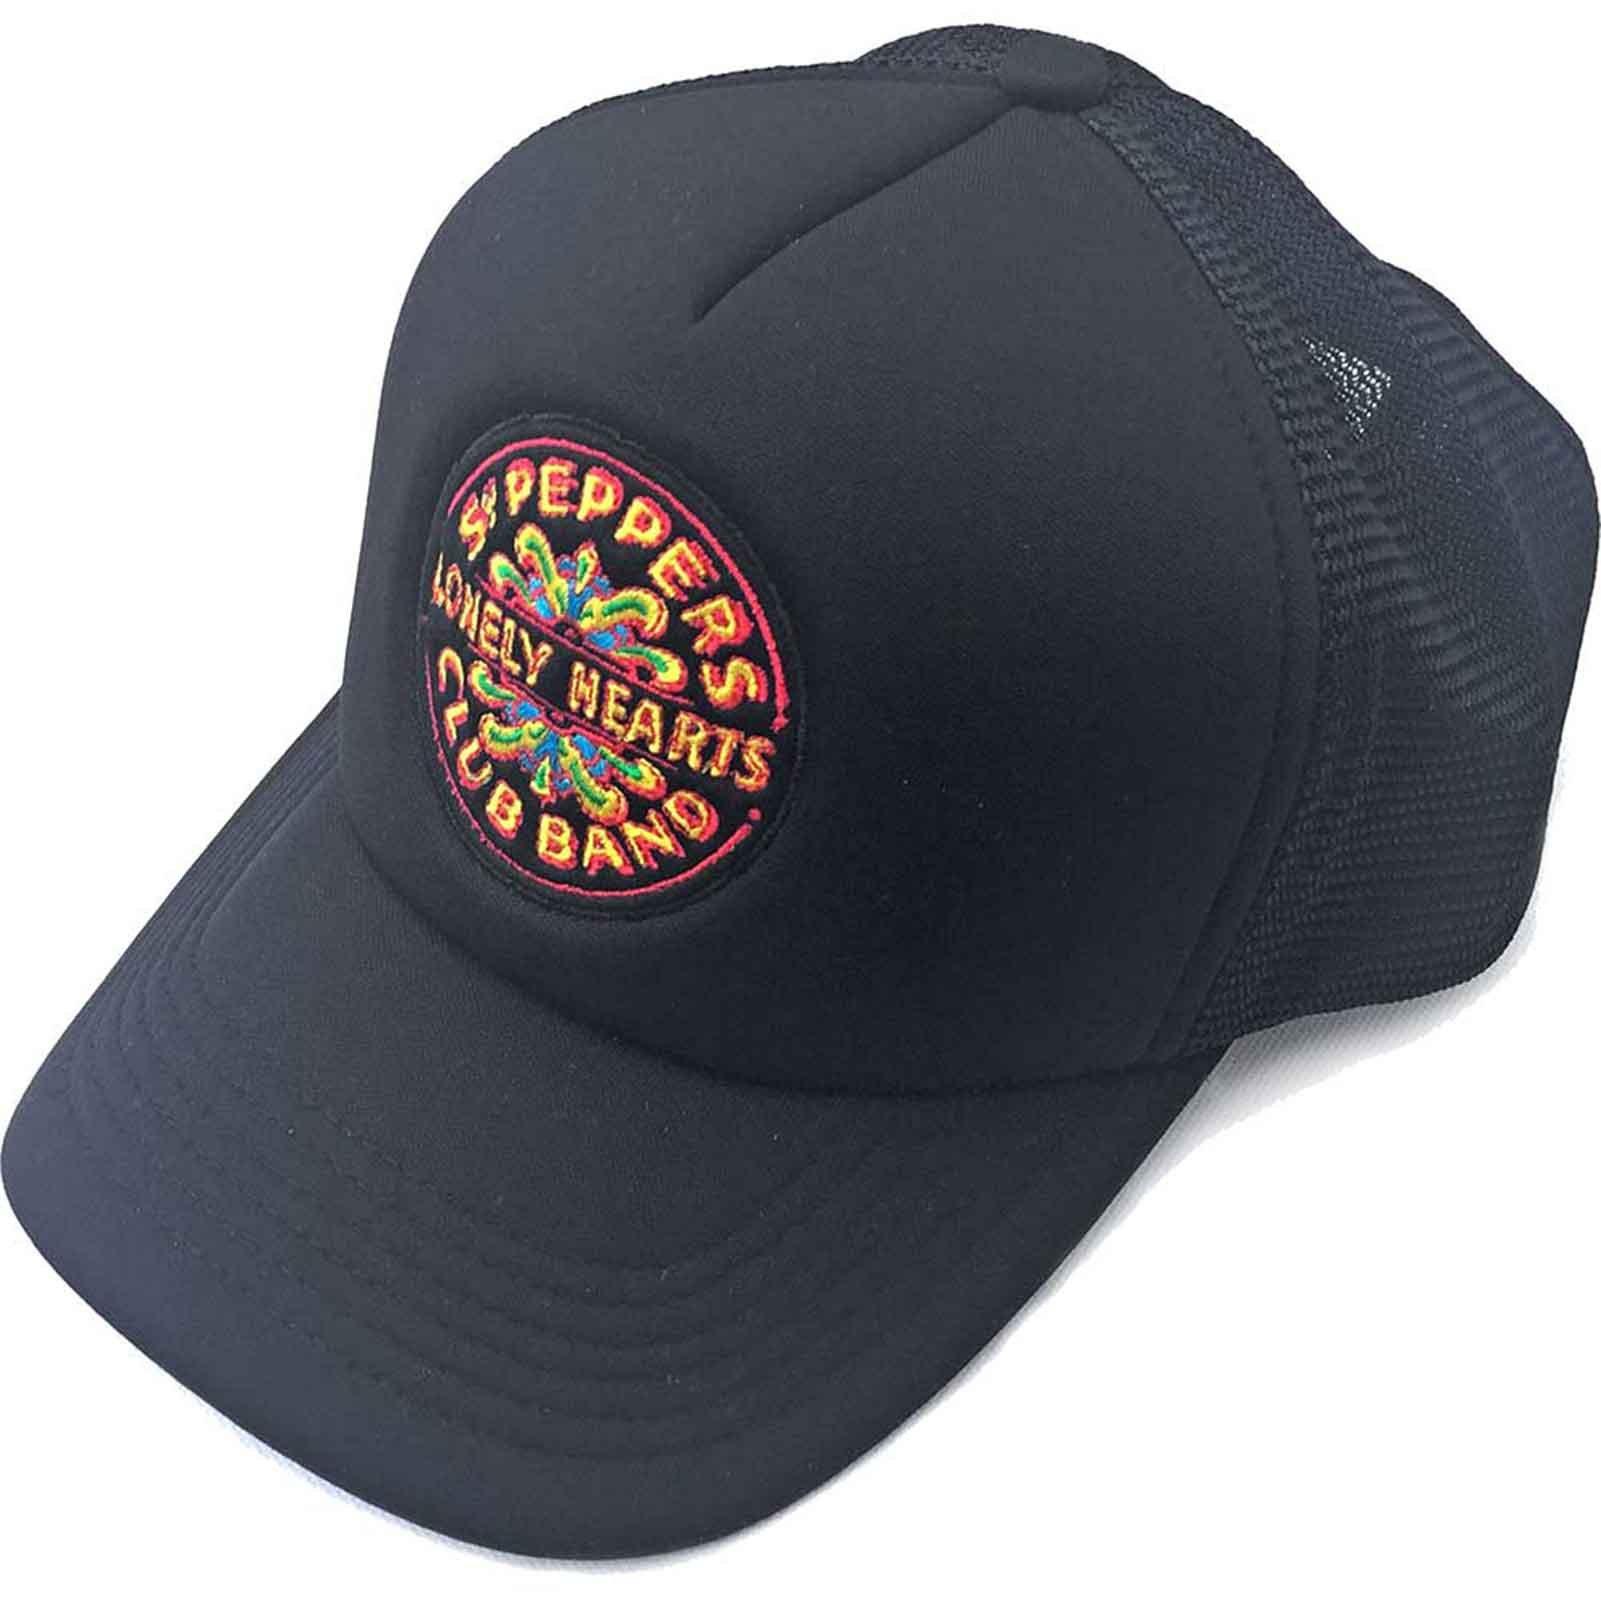 Бейсбольная кепка Trucker с логотипом Sgt Pepper Drum Beatles, черный бейсбольная кепка sgt pepper strip the beatles черный